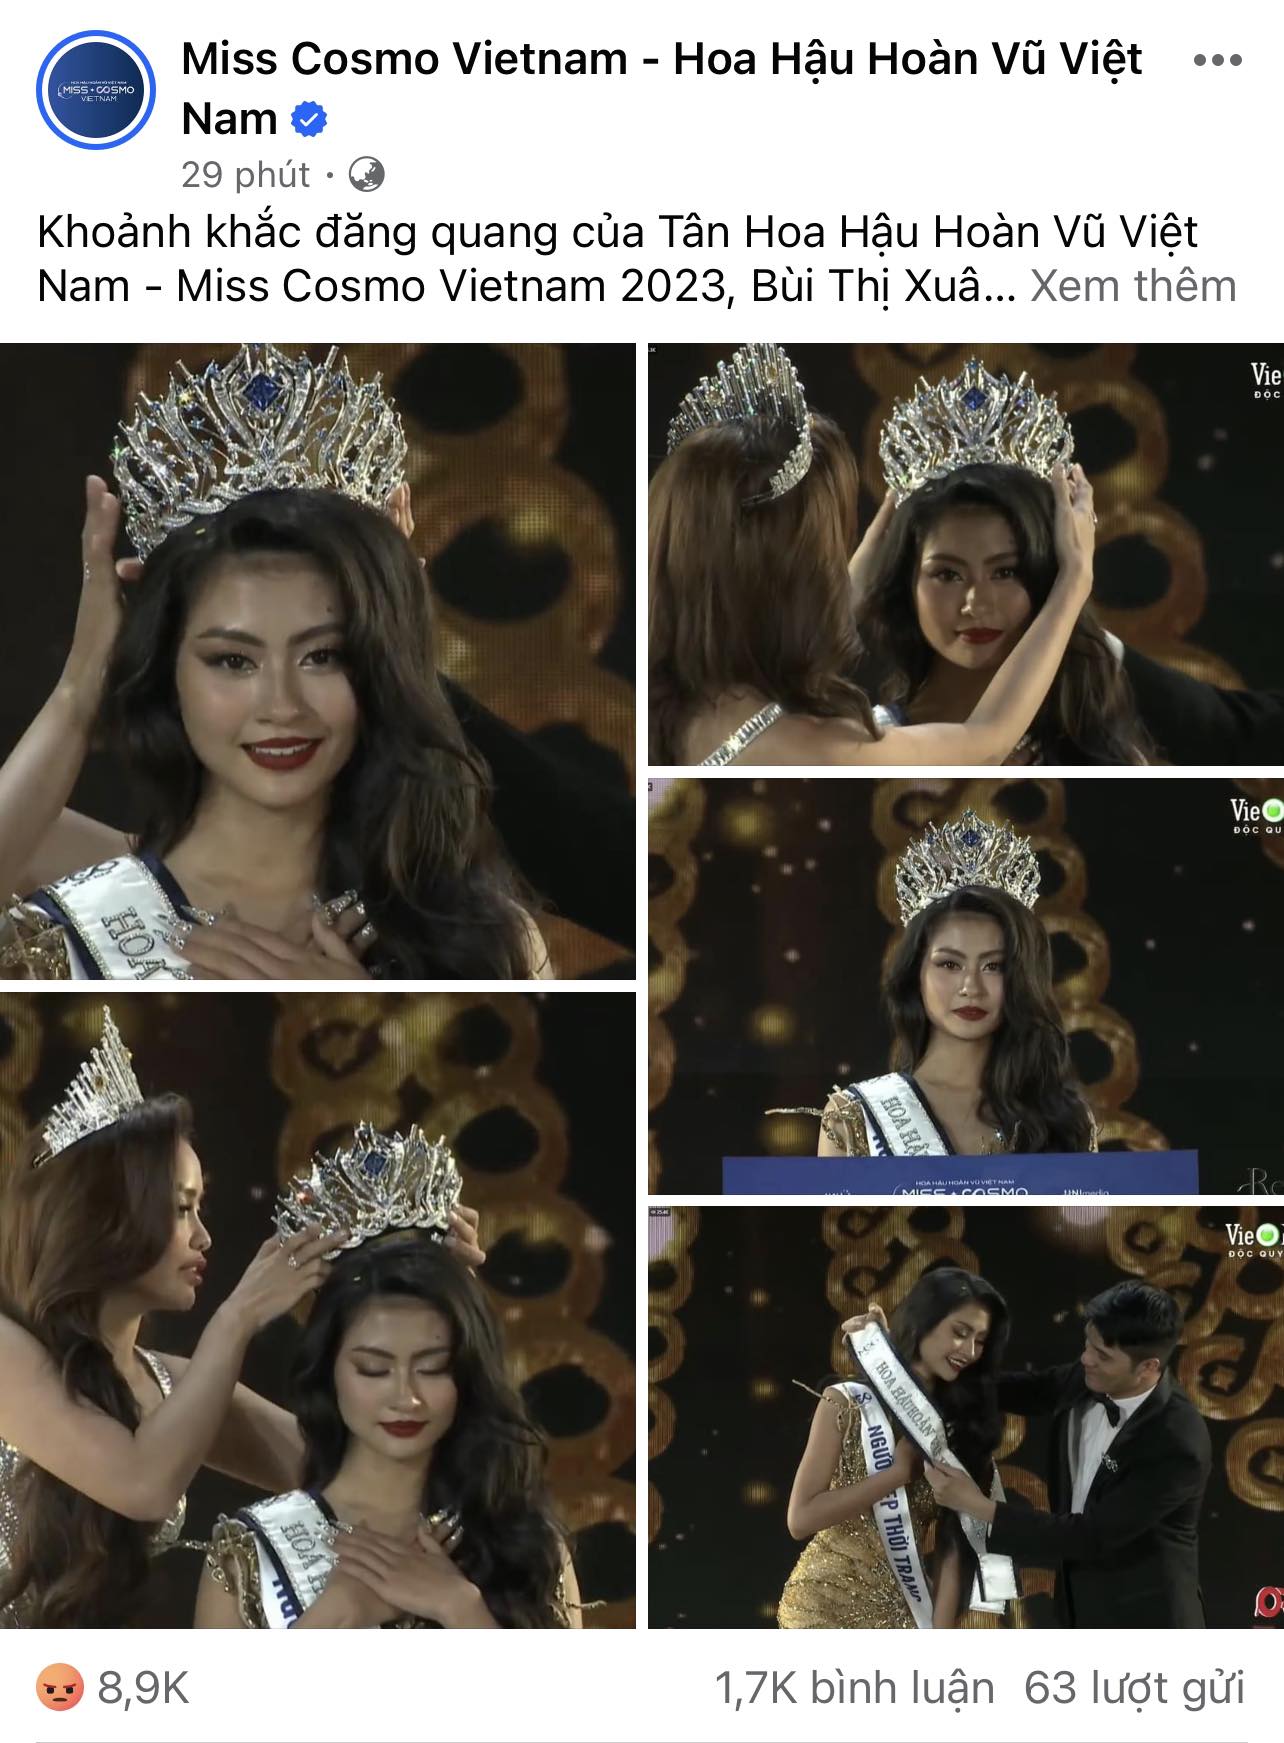 Tân Hoa hậu Hoàn vũ Việt Nam vấp làn sóng phẫn nộ ngay trong giây phút đăng quang, bị lập nhóm anti và gọi là 